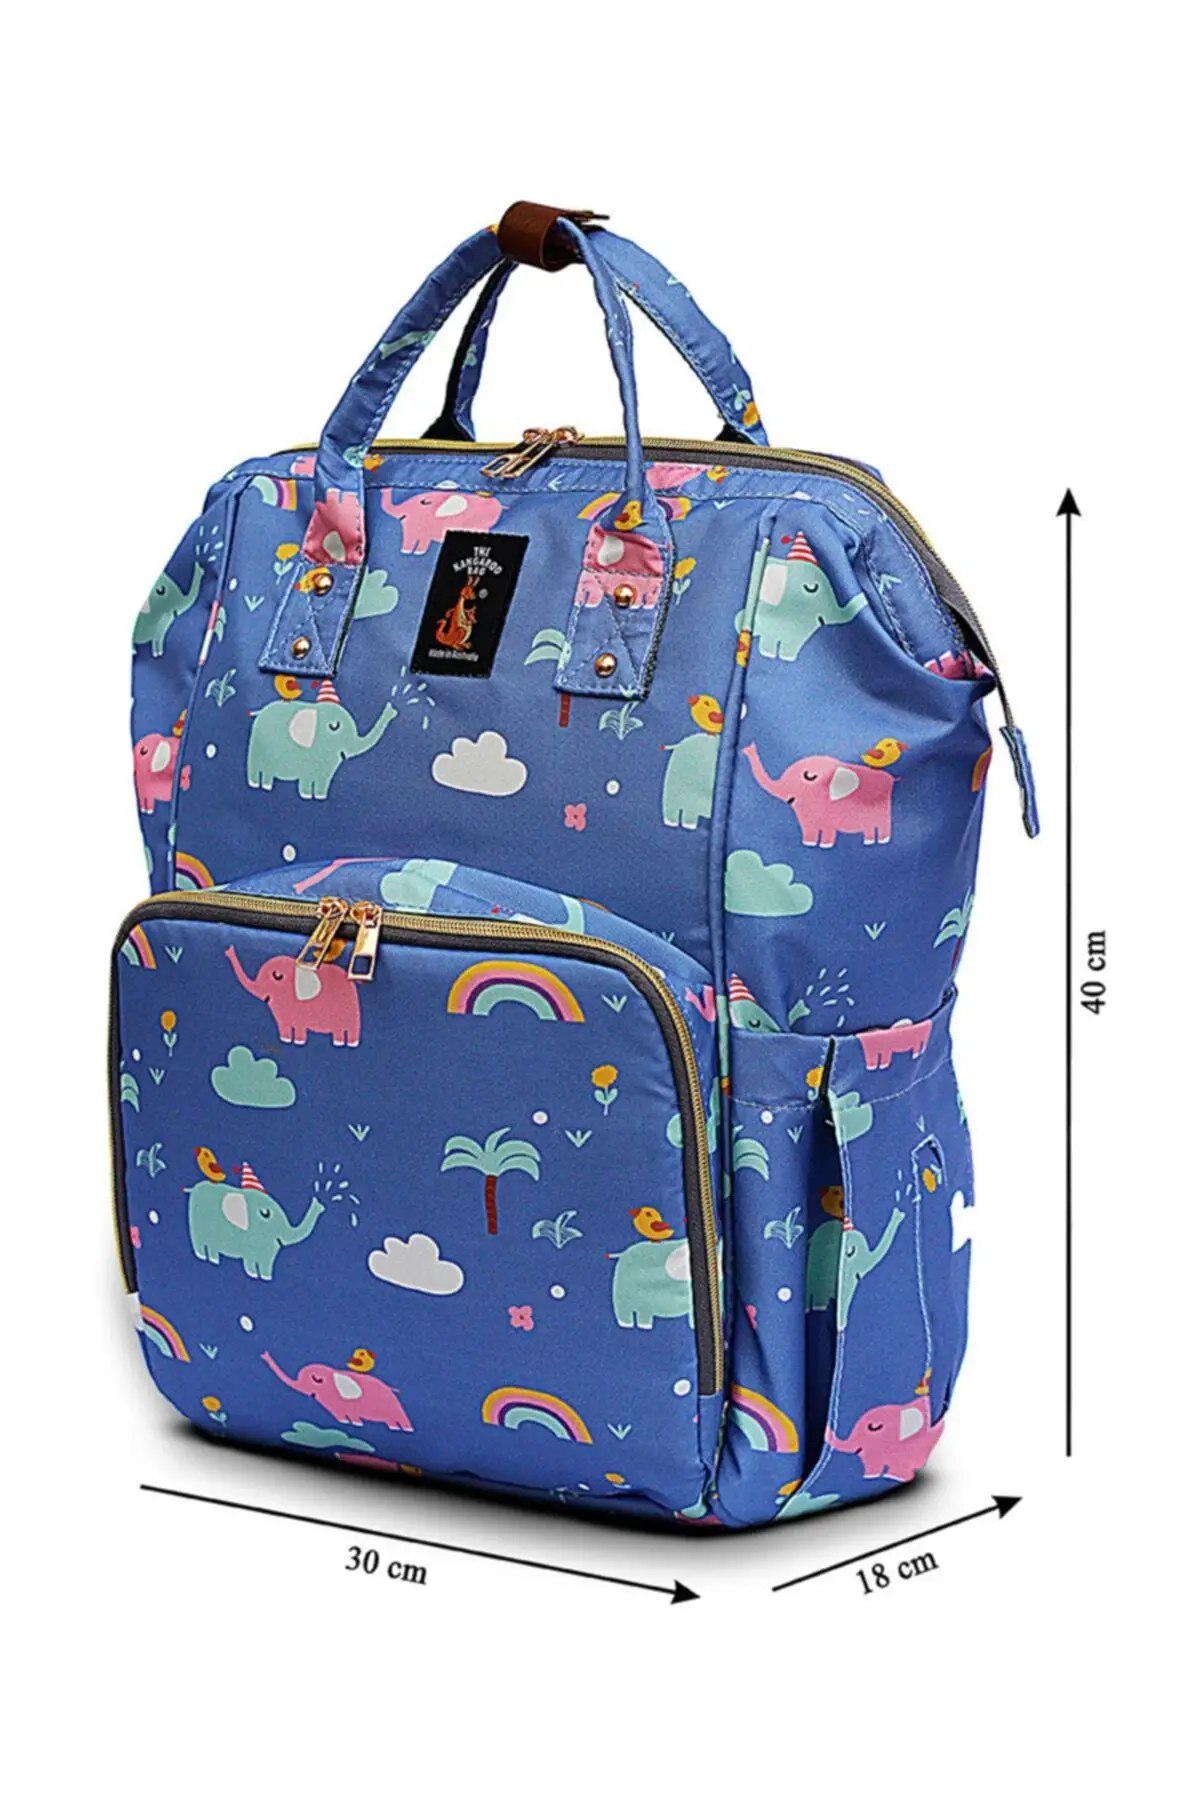 Luxury Mother Baby Care Backpack Elephant Pattern Multifunctional Large Capacity Mother nappy Travel Bag Female Fashion Elegant